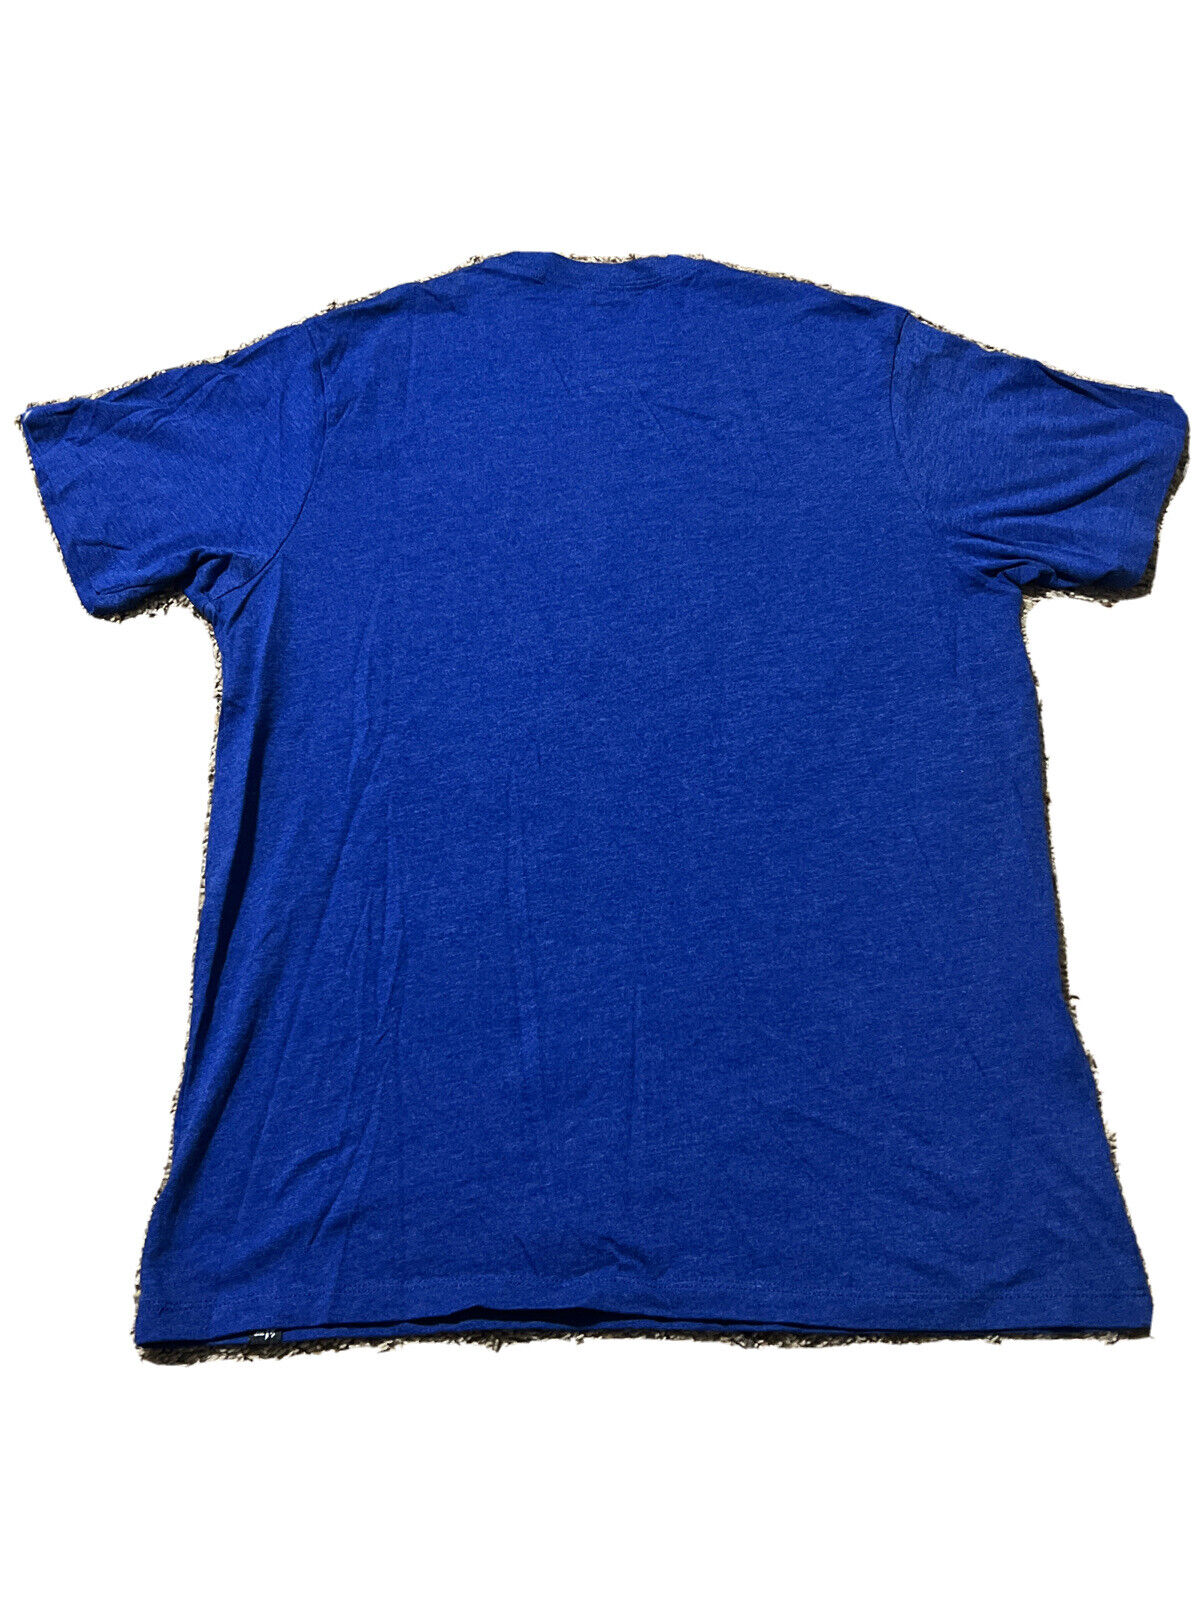 47 Brand / Men's Golden State Warriors Blue Arch T-Shirt